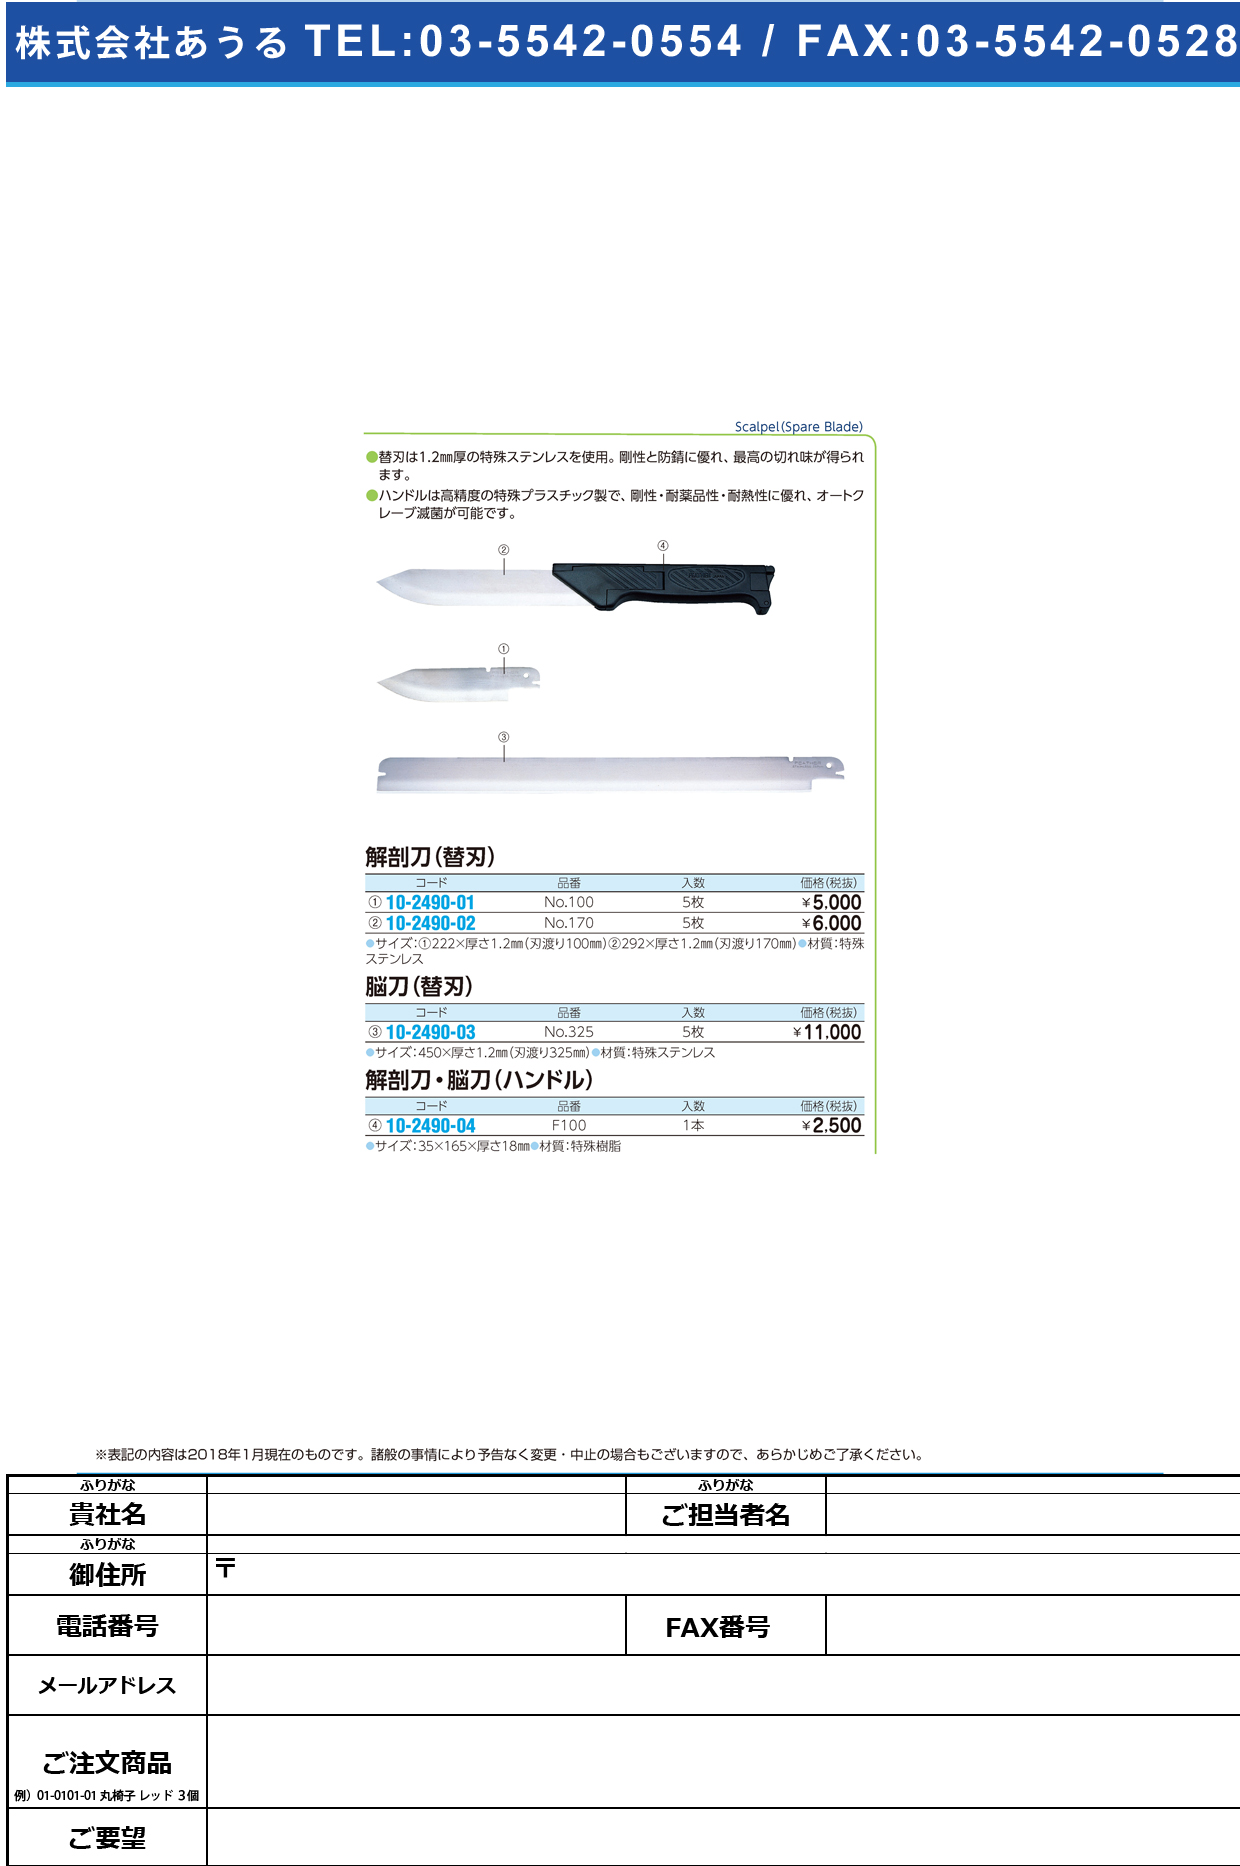 (10-2490-01)フェザー解剖刀替刃 NO.100(5ﾏｲｲﾘ) ﾌｪｻﾞｰｶｲﾎｳﾄｳｶｴﾊﾞ【1箱単位】【2018年カタログ商品】